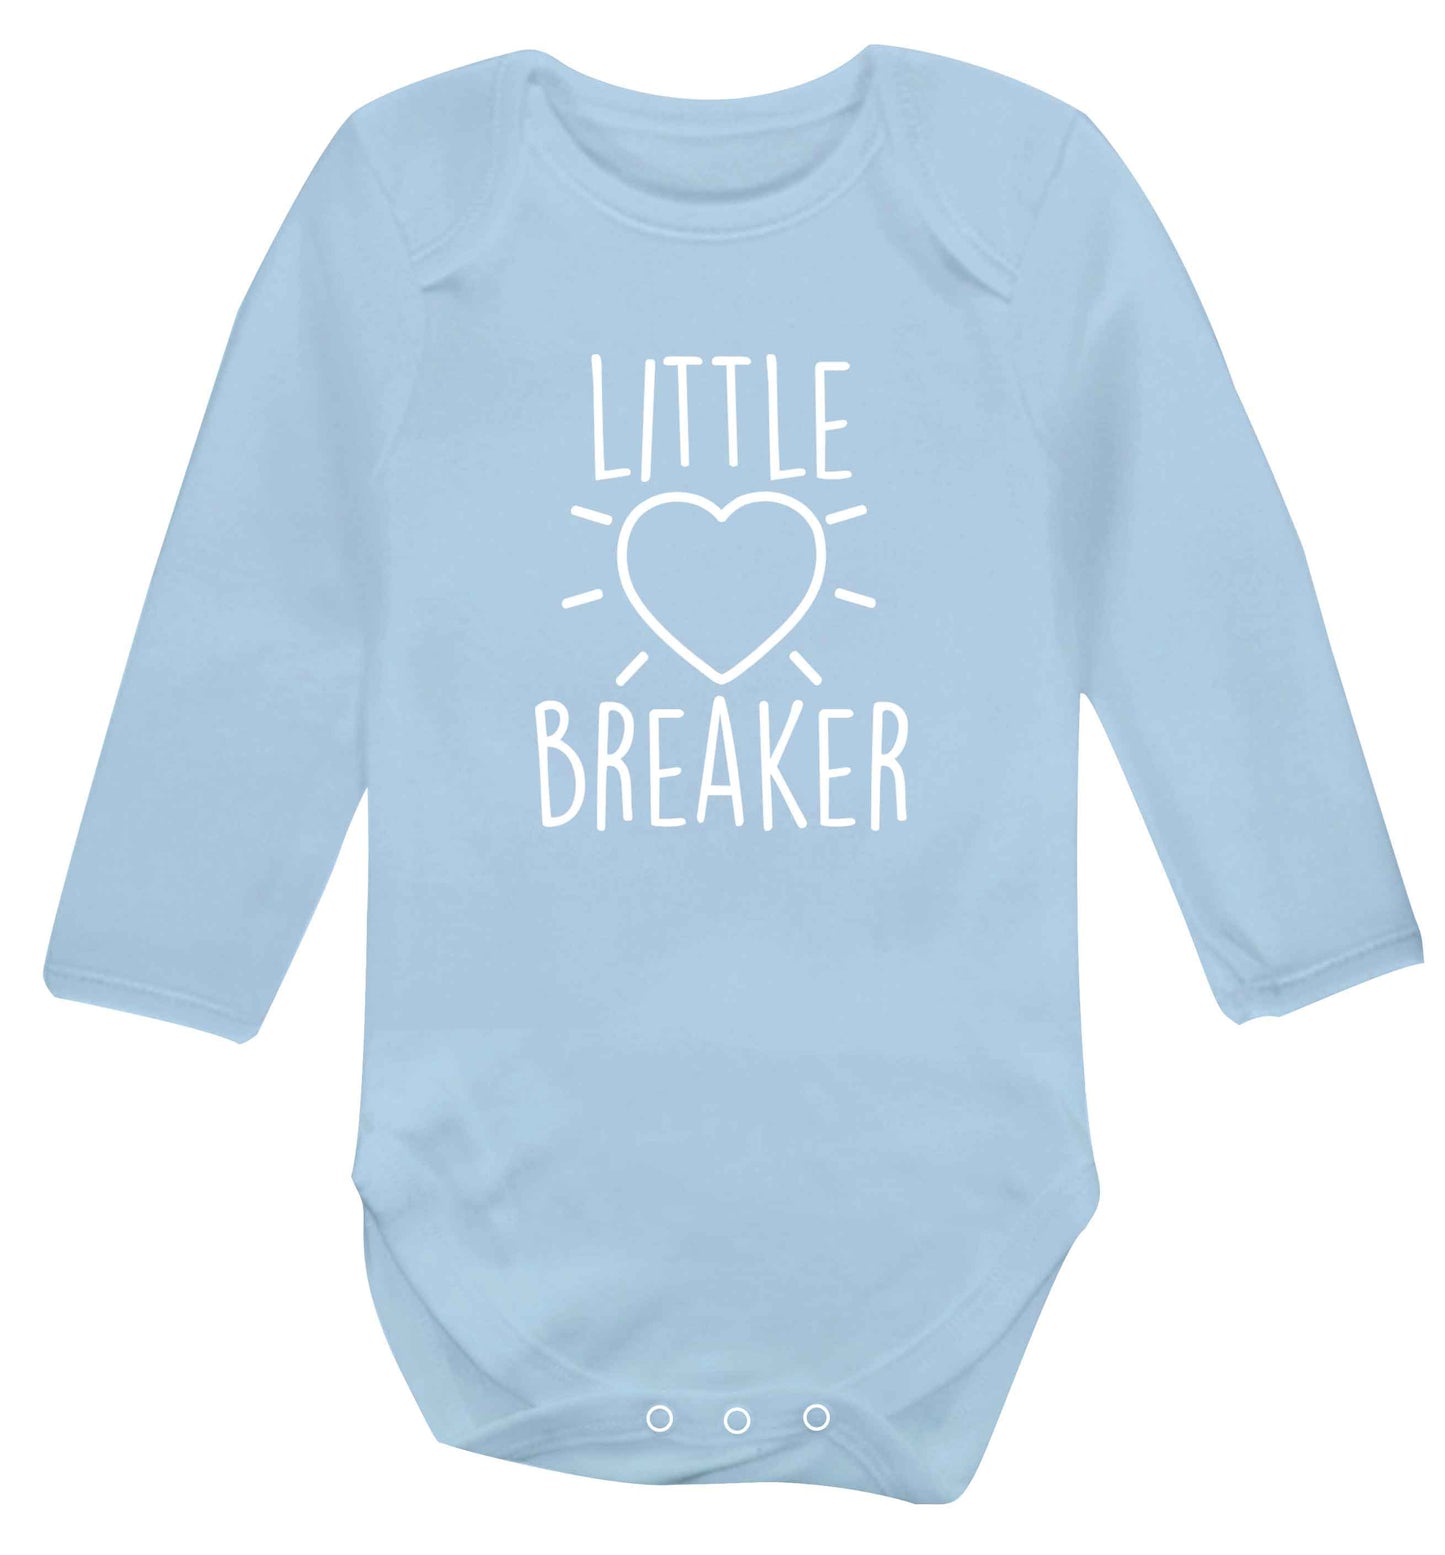 Little heartbreaker baby vest long sleeved pale blue 6-12 months